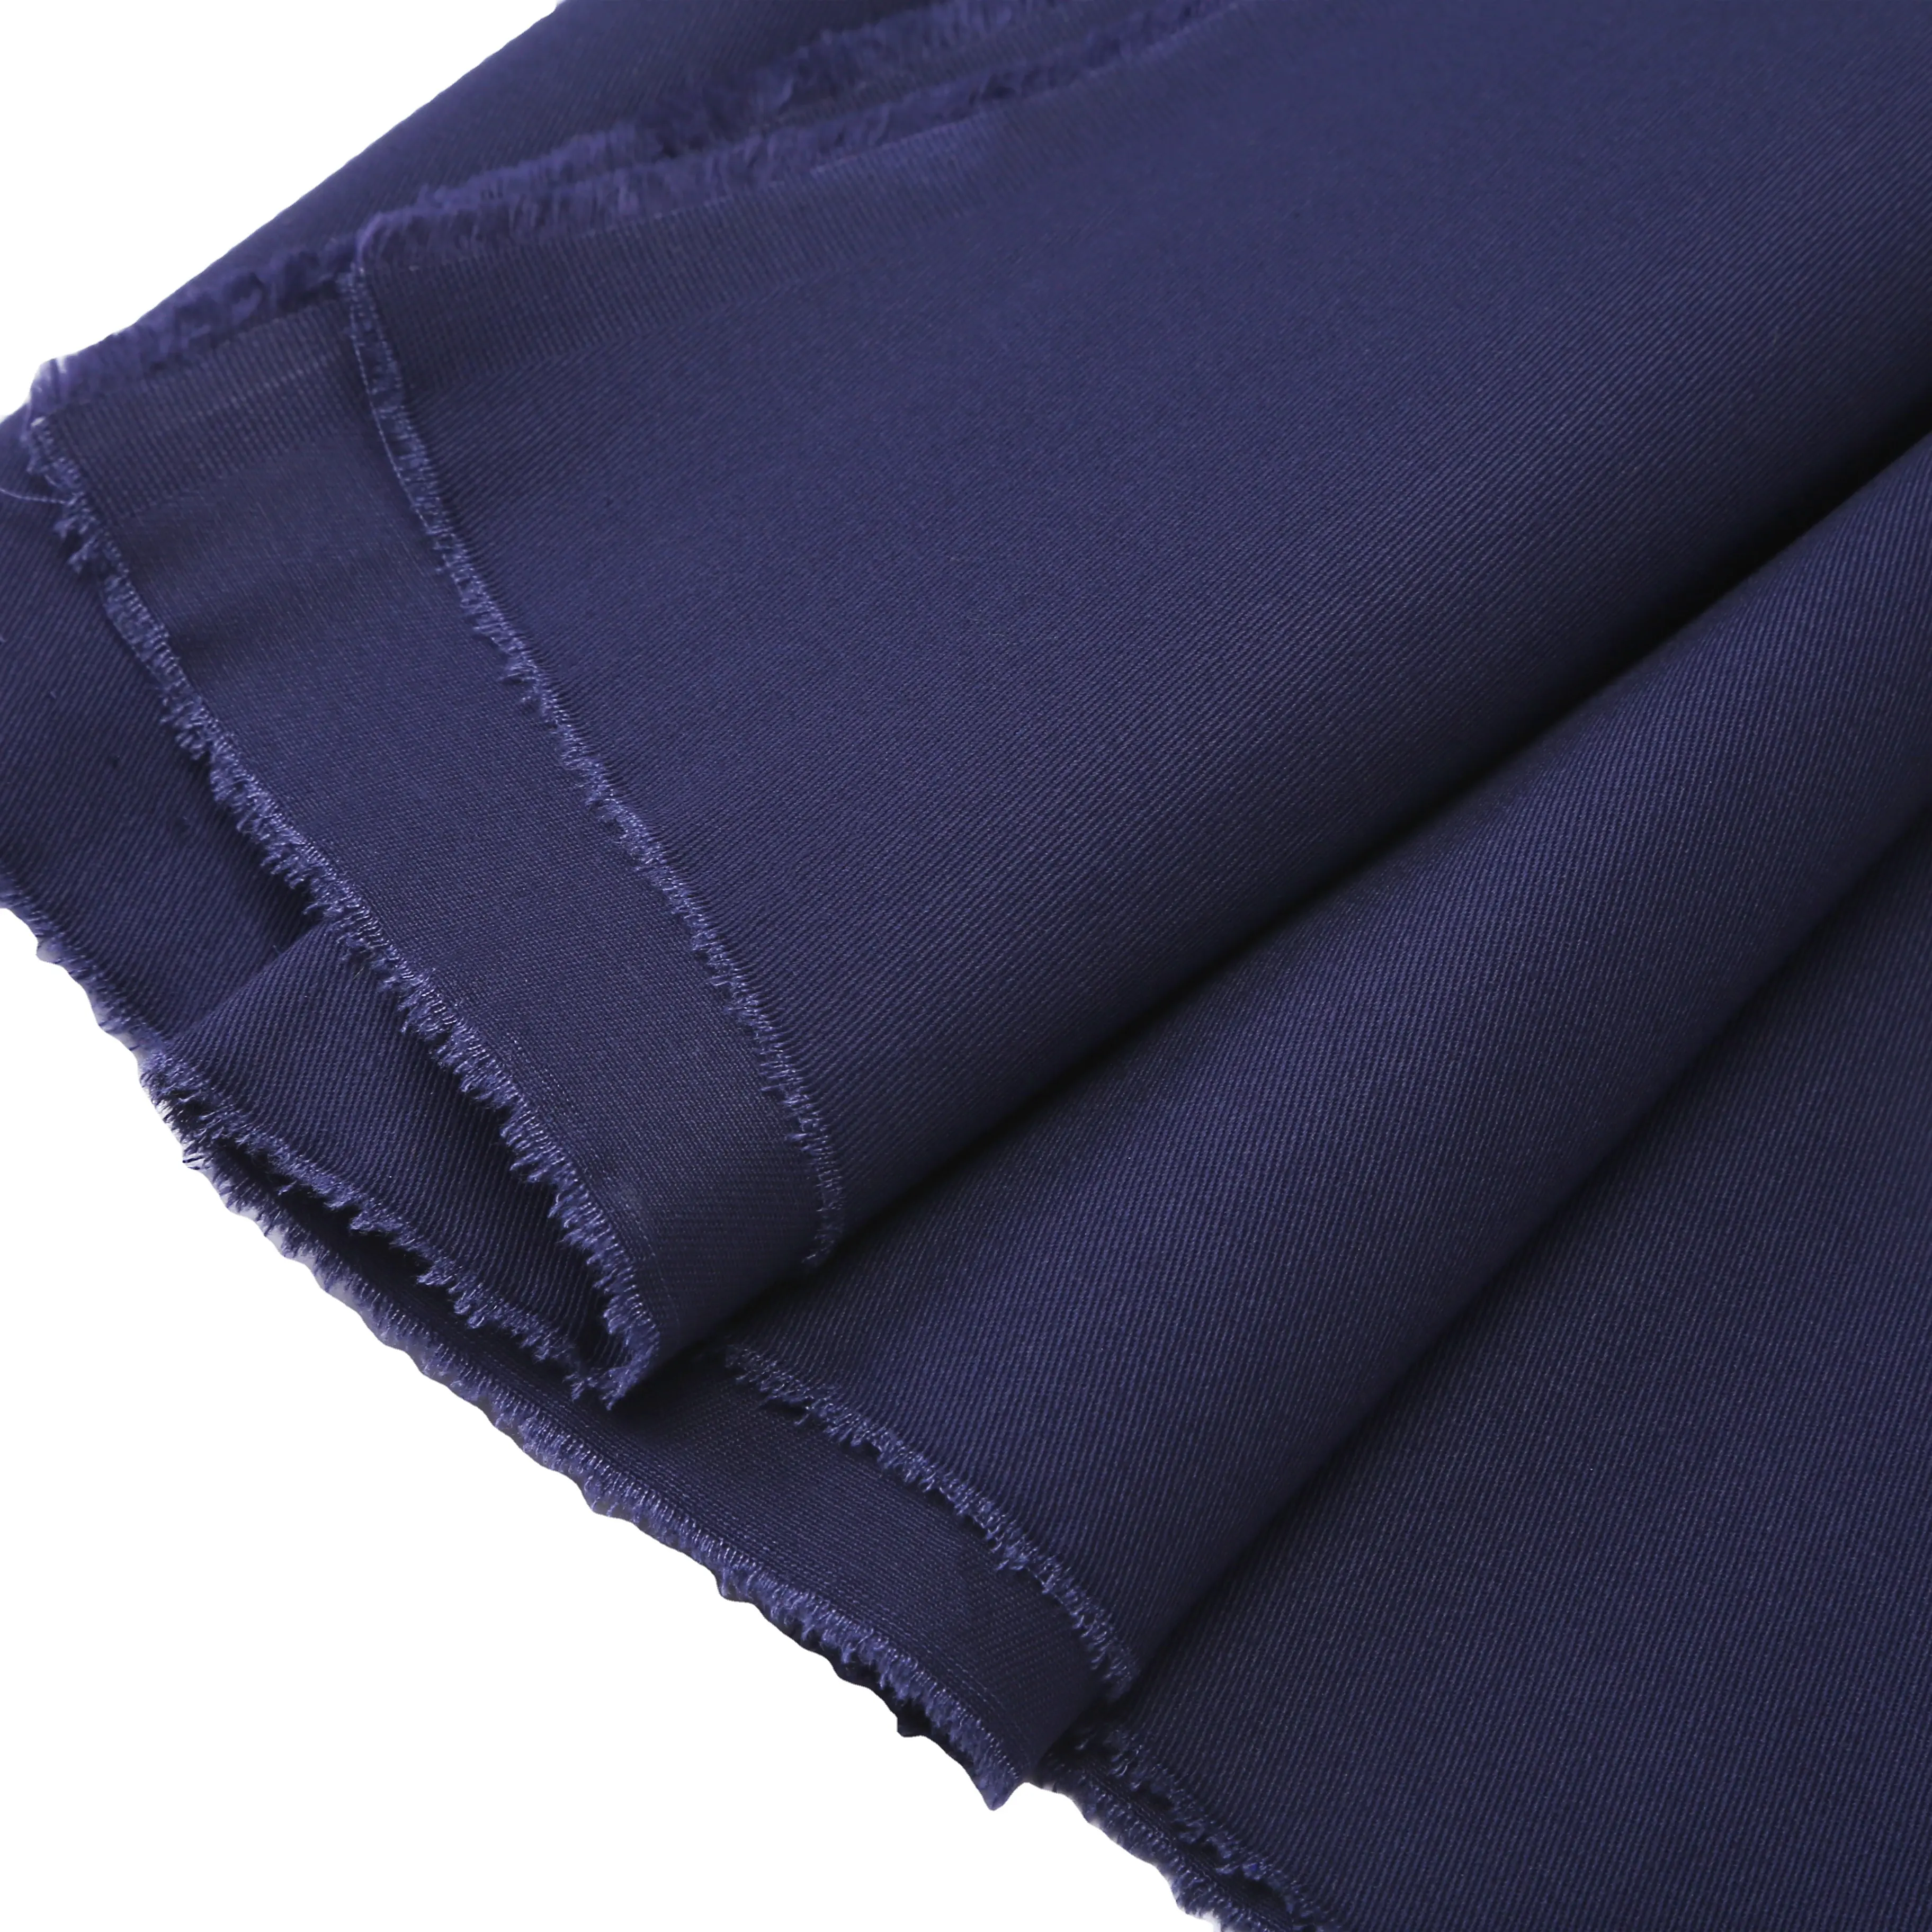 100% polyester tissu ignifuge tissu oxford ignifuge de haute qualité pour uniformes de vêtements de travail